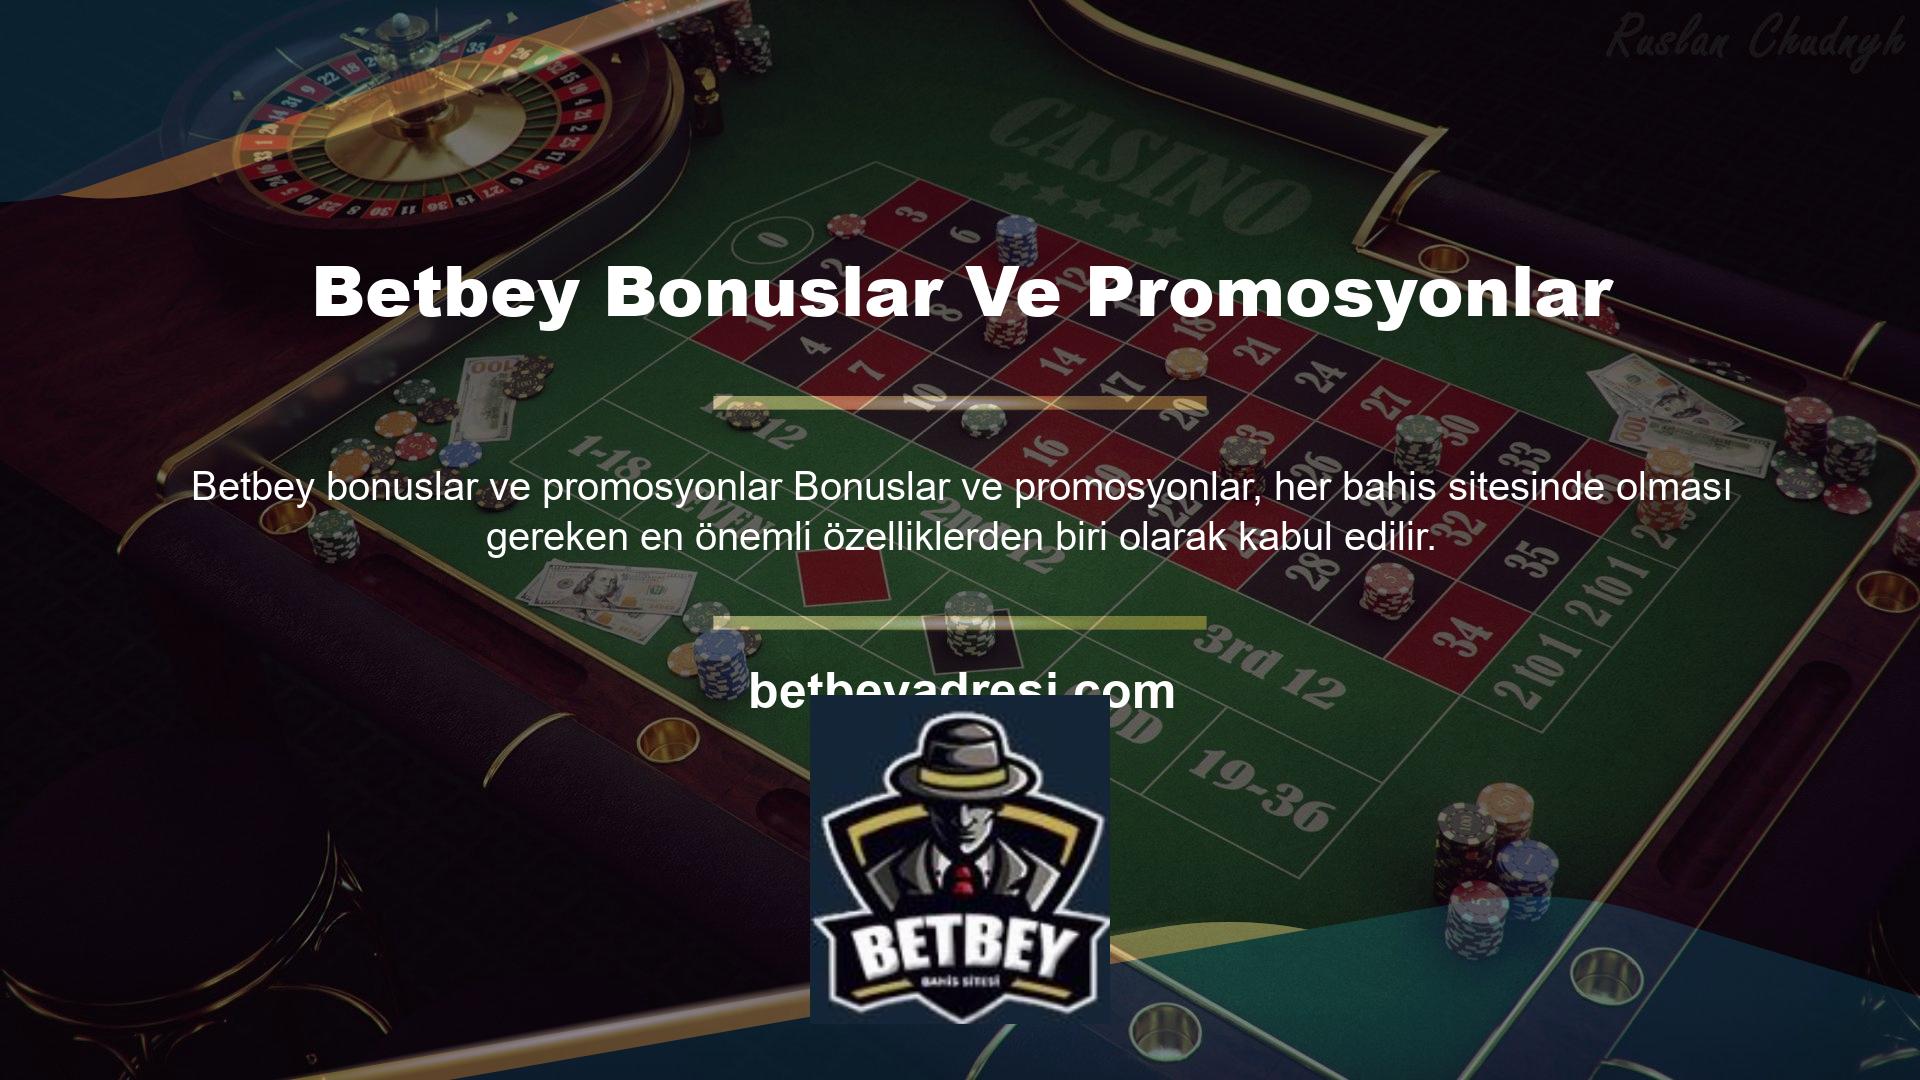 Betbey sitesi, kullanıcılarına sunduğu promosyon ve teşviklerle de müşterilerini memnun etmeyi başarıyor